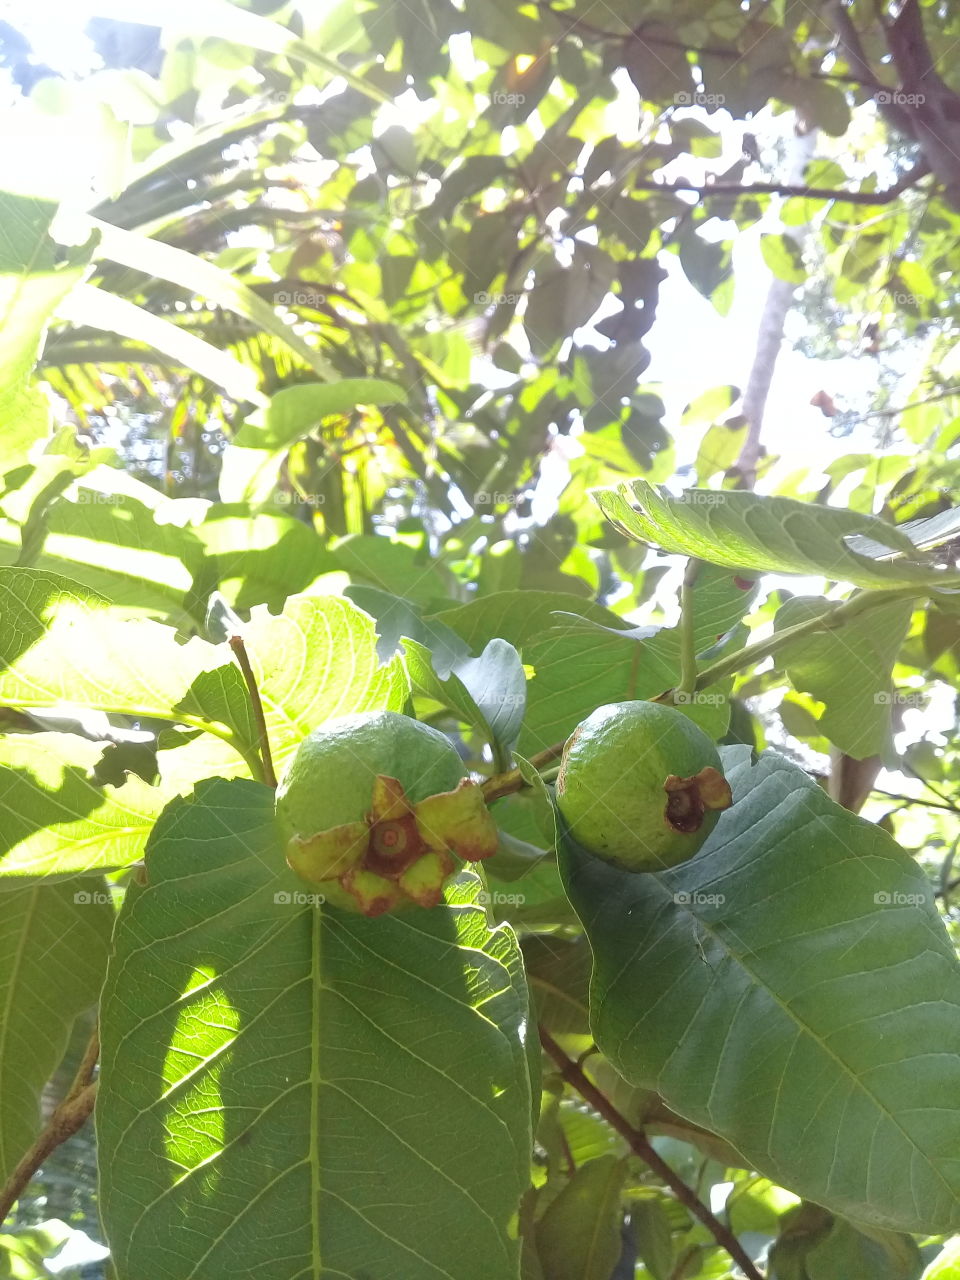 first guava fruit in y garden